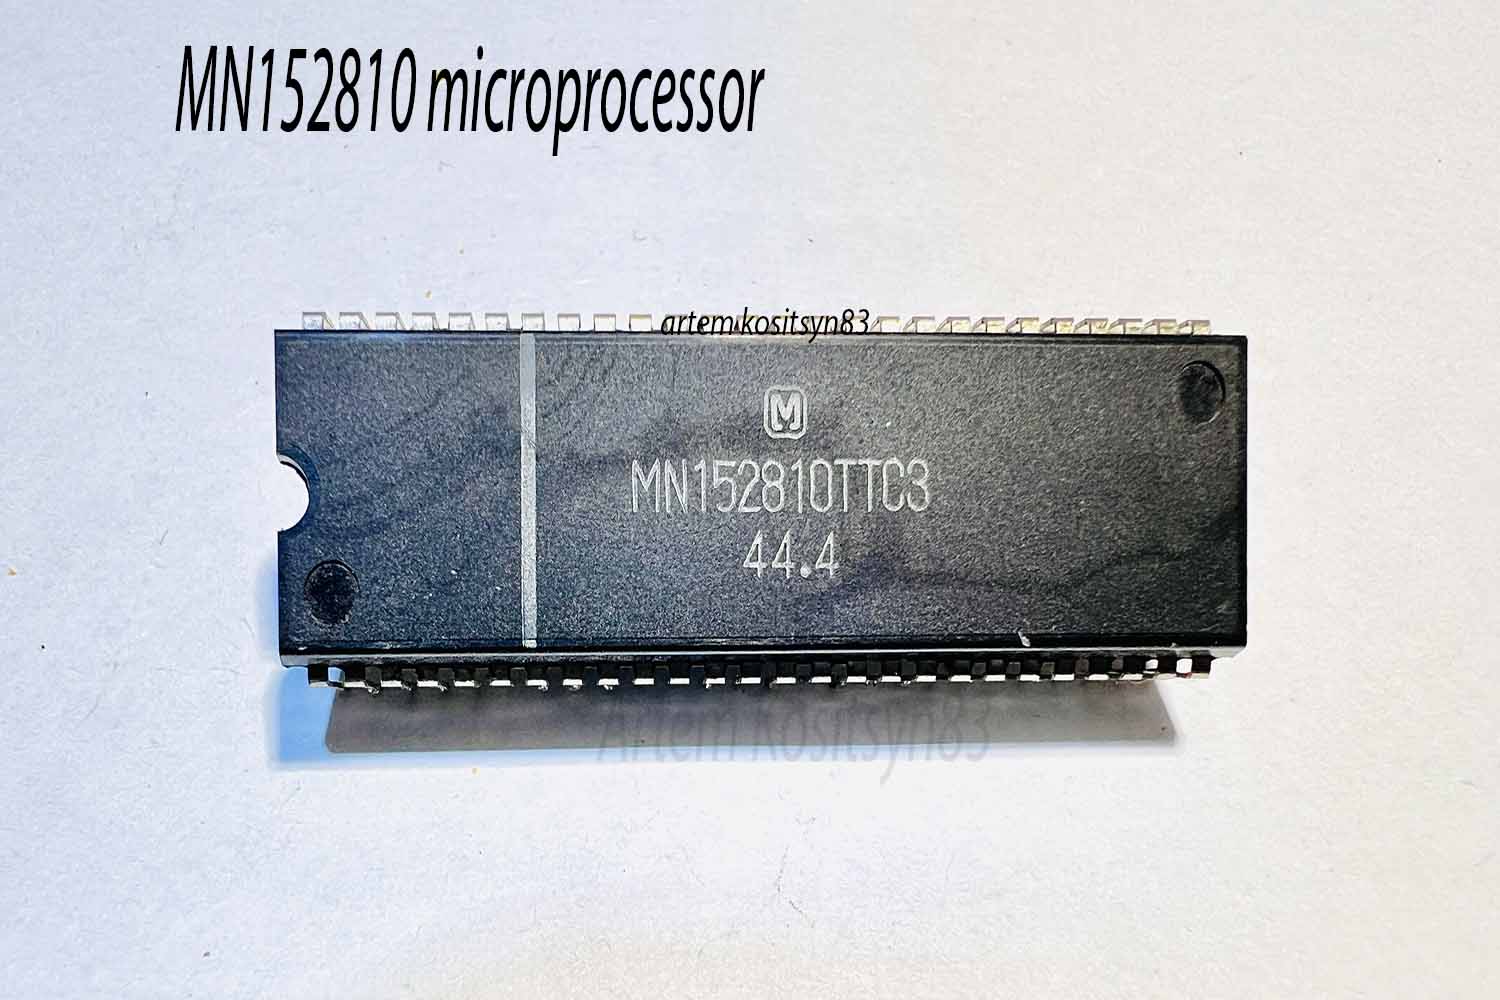 Подробнее о статье MN152810 microprocessor.Datasheet